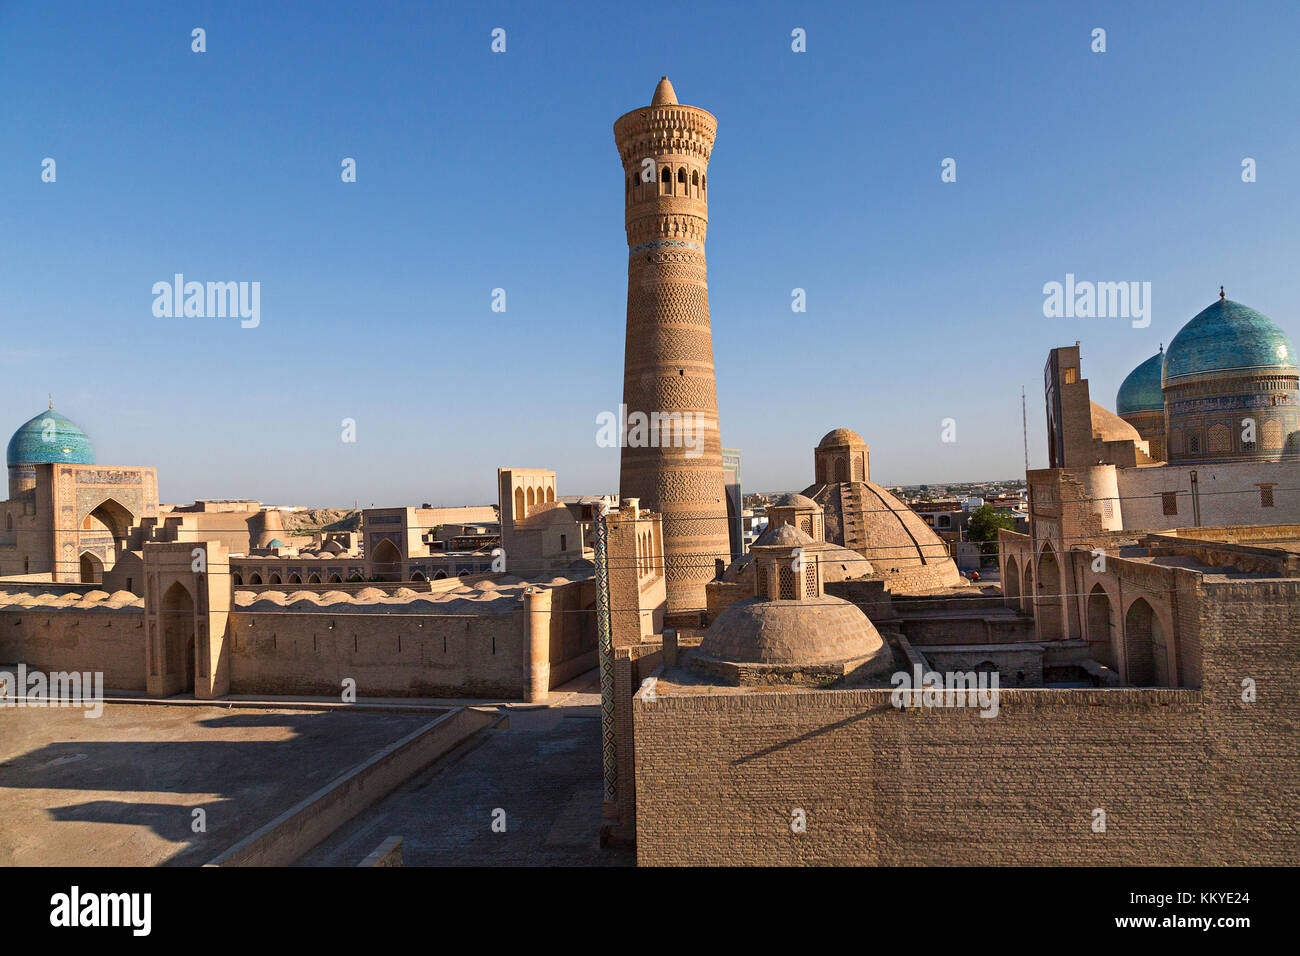 POI Kalon Moschee und Minarett in Buchara, Usbekistan. Stockfoto